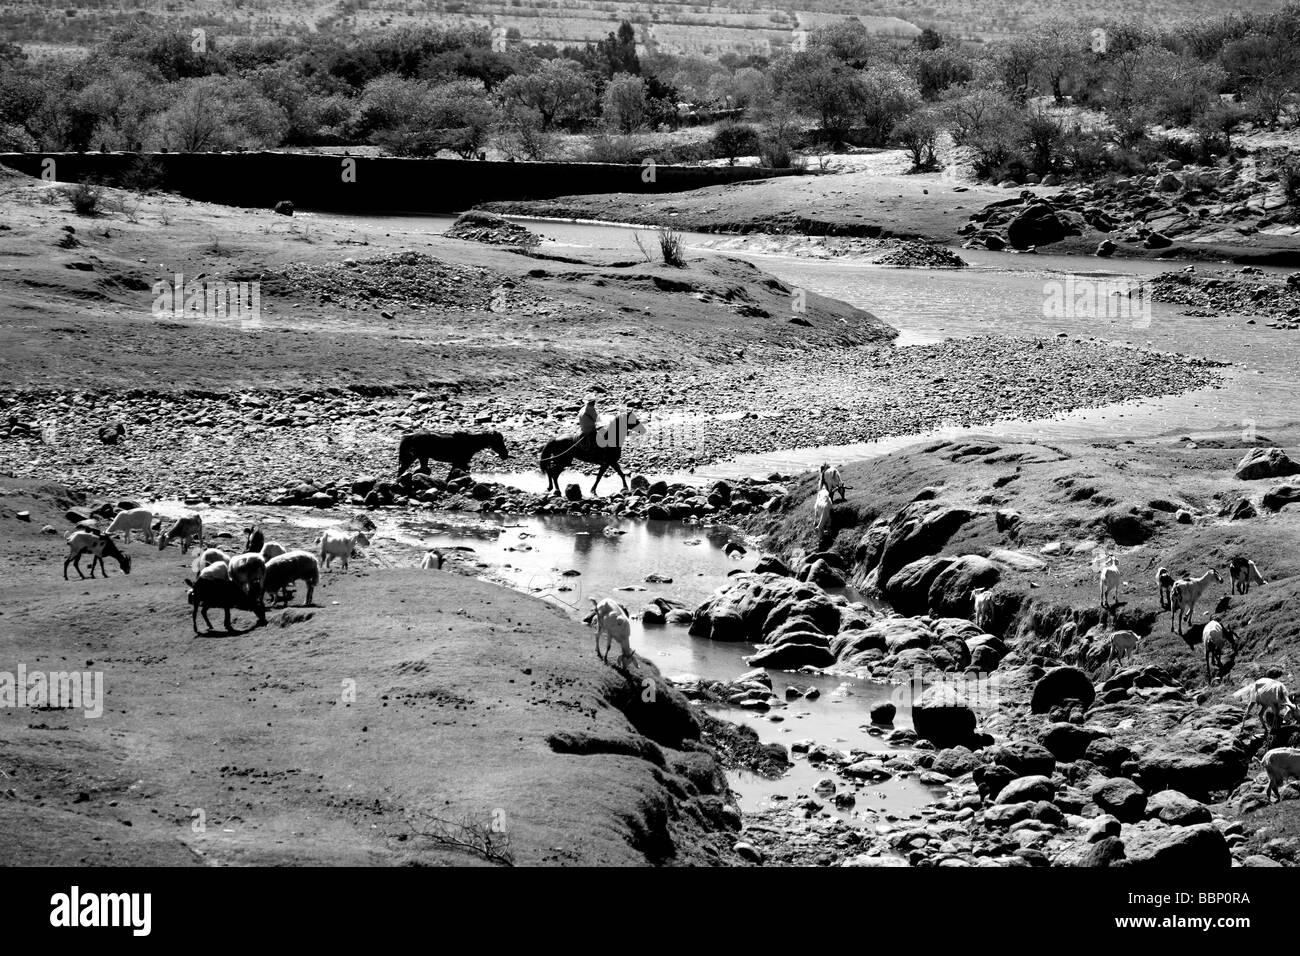 schwarze und weiße Landschaft Fluss mit Pferden in einem nostalgischen Bild Kreuzung inspiriert Wildnis in Ruhe beautyful Horizonte Stockfoto